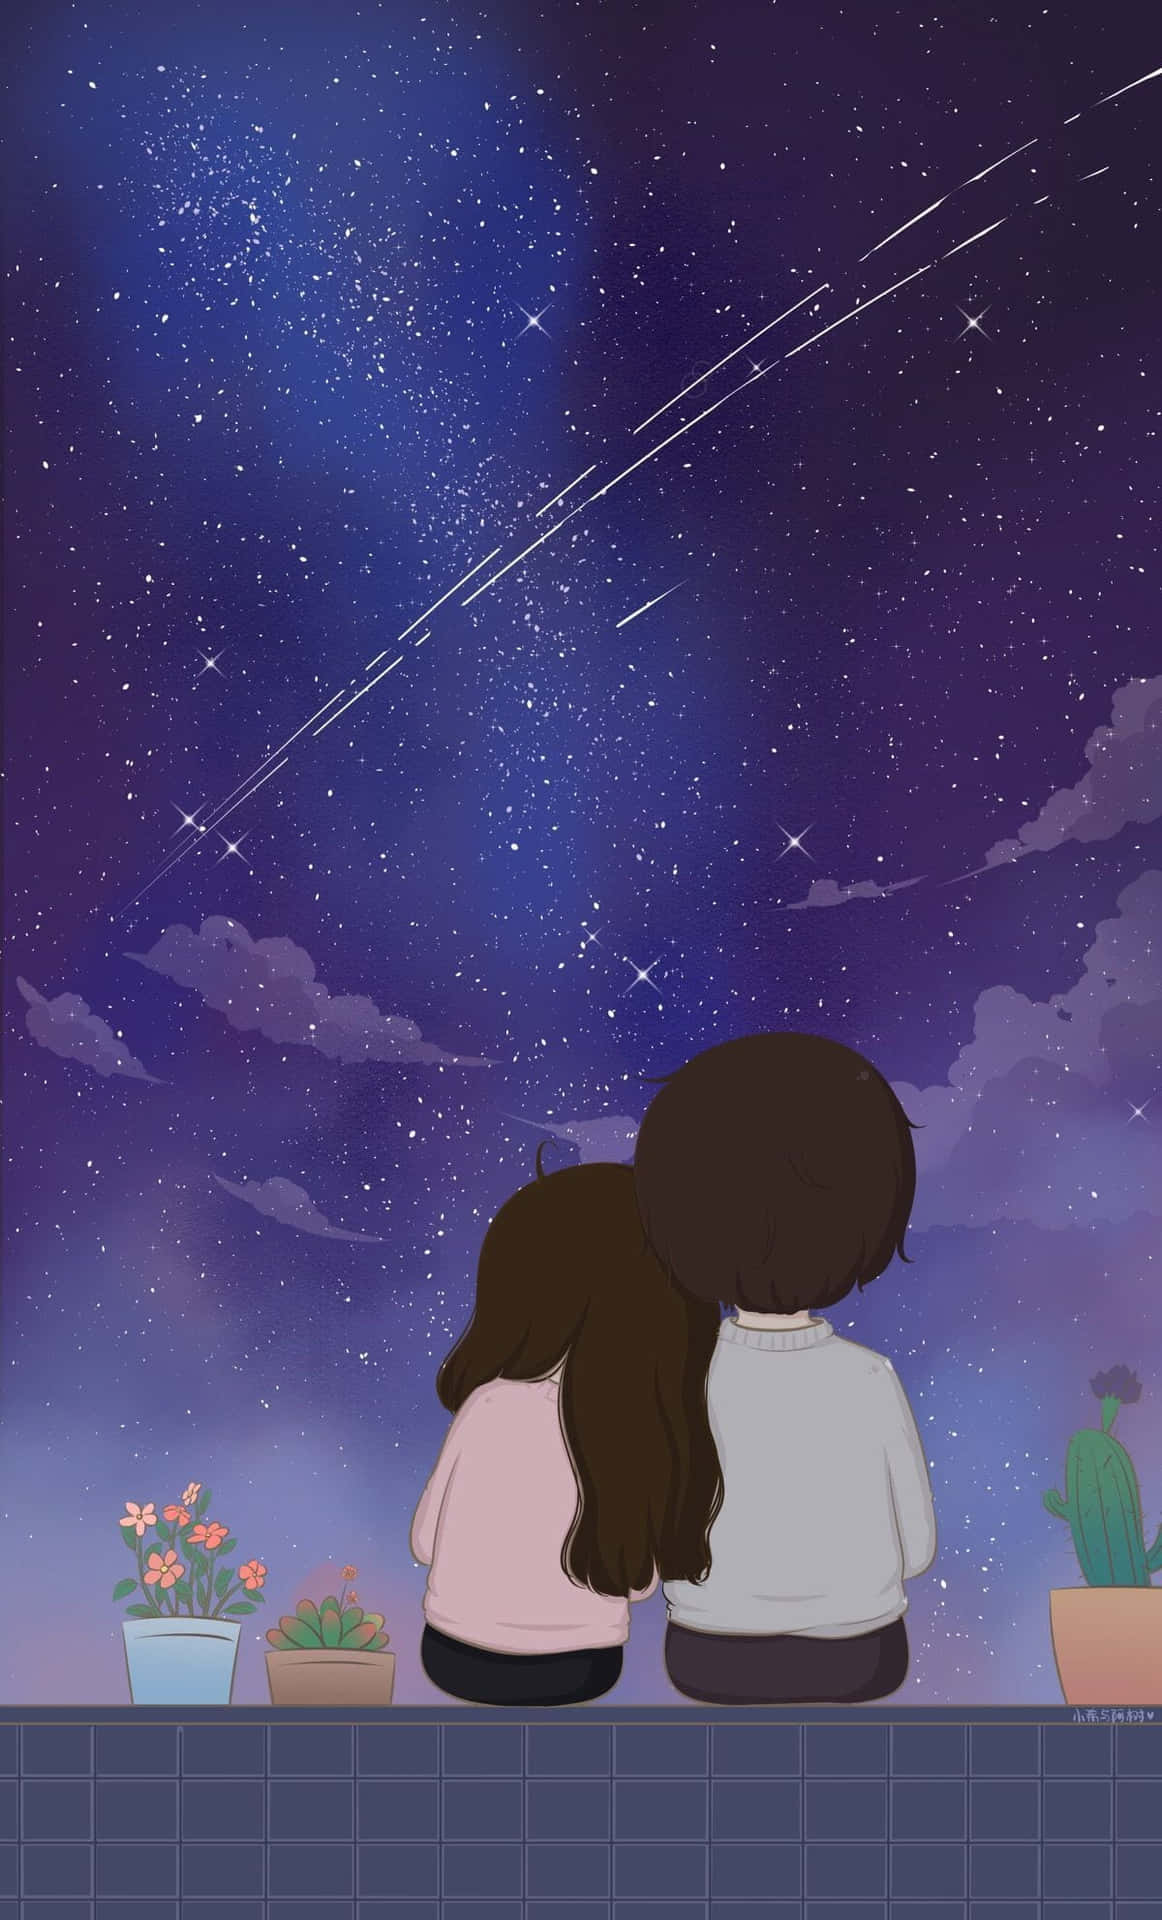 Et par der kigger på stjernerne på himlen